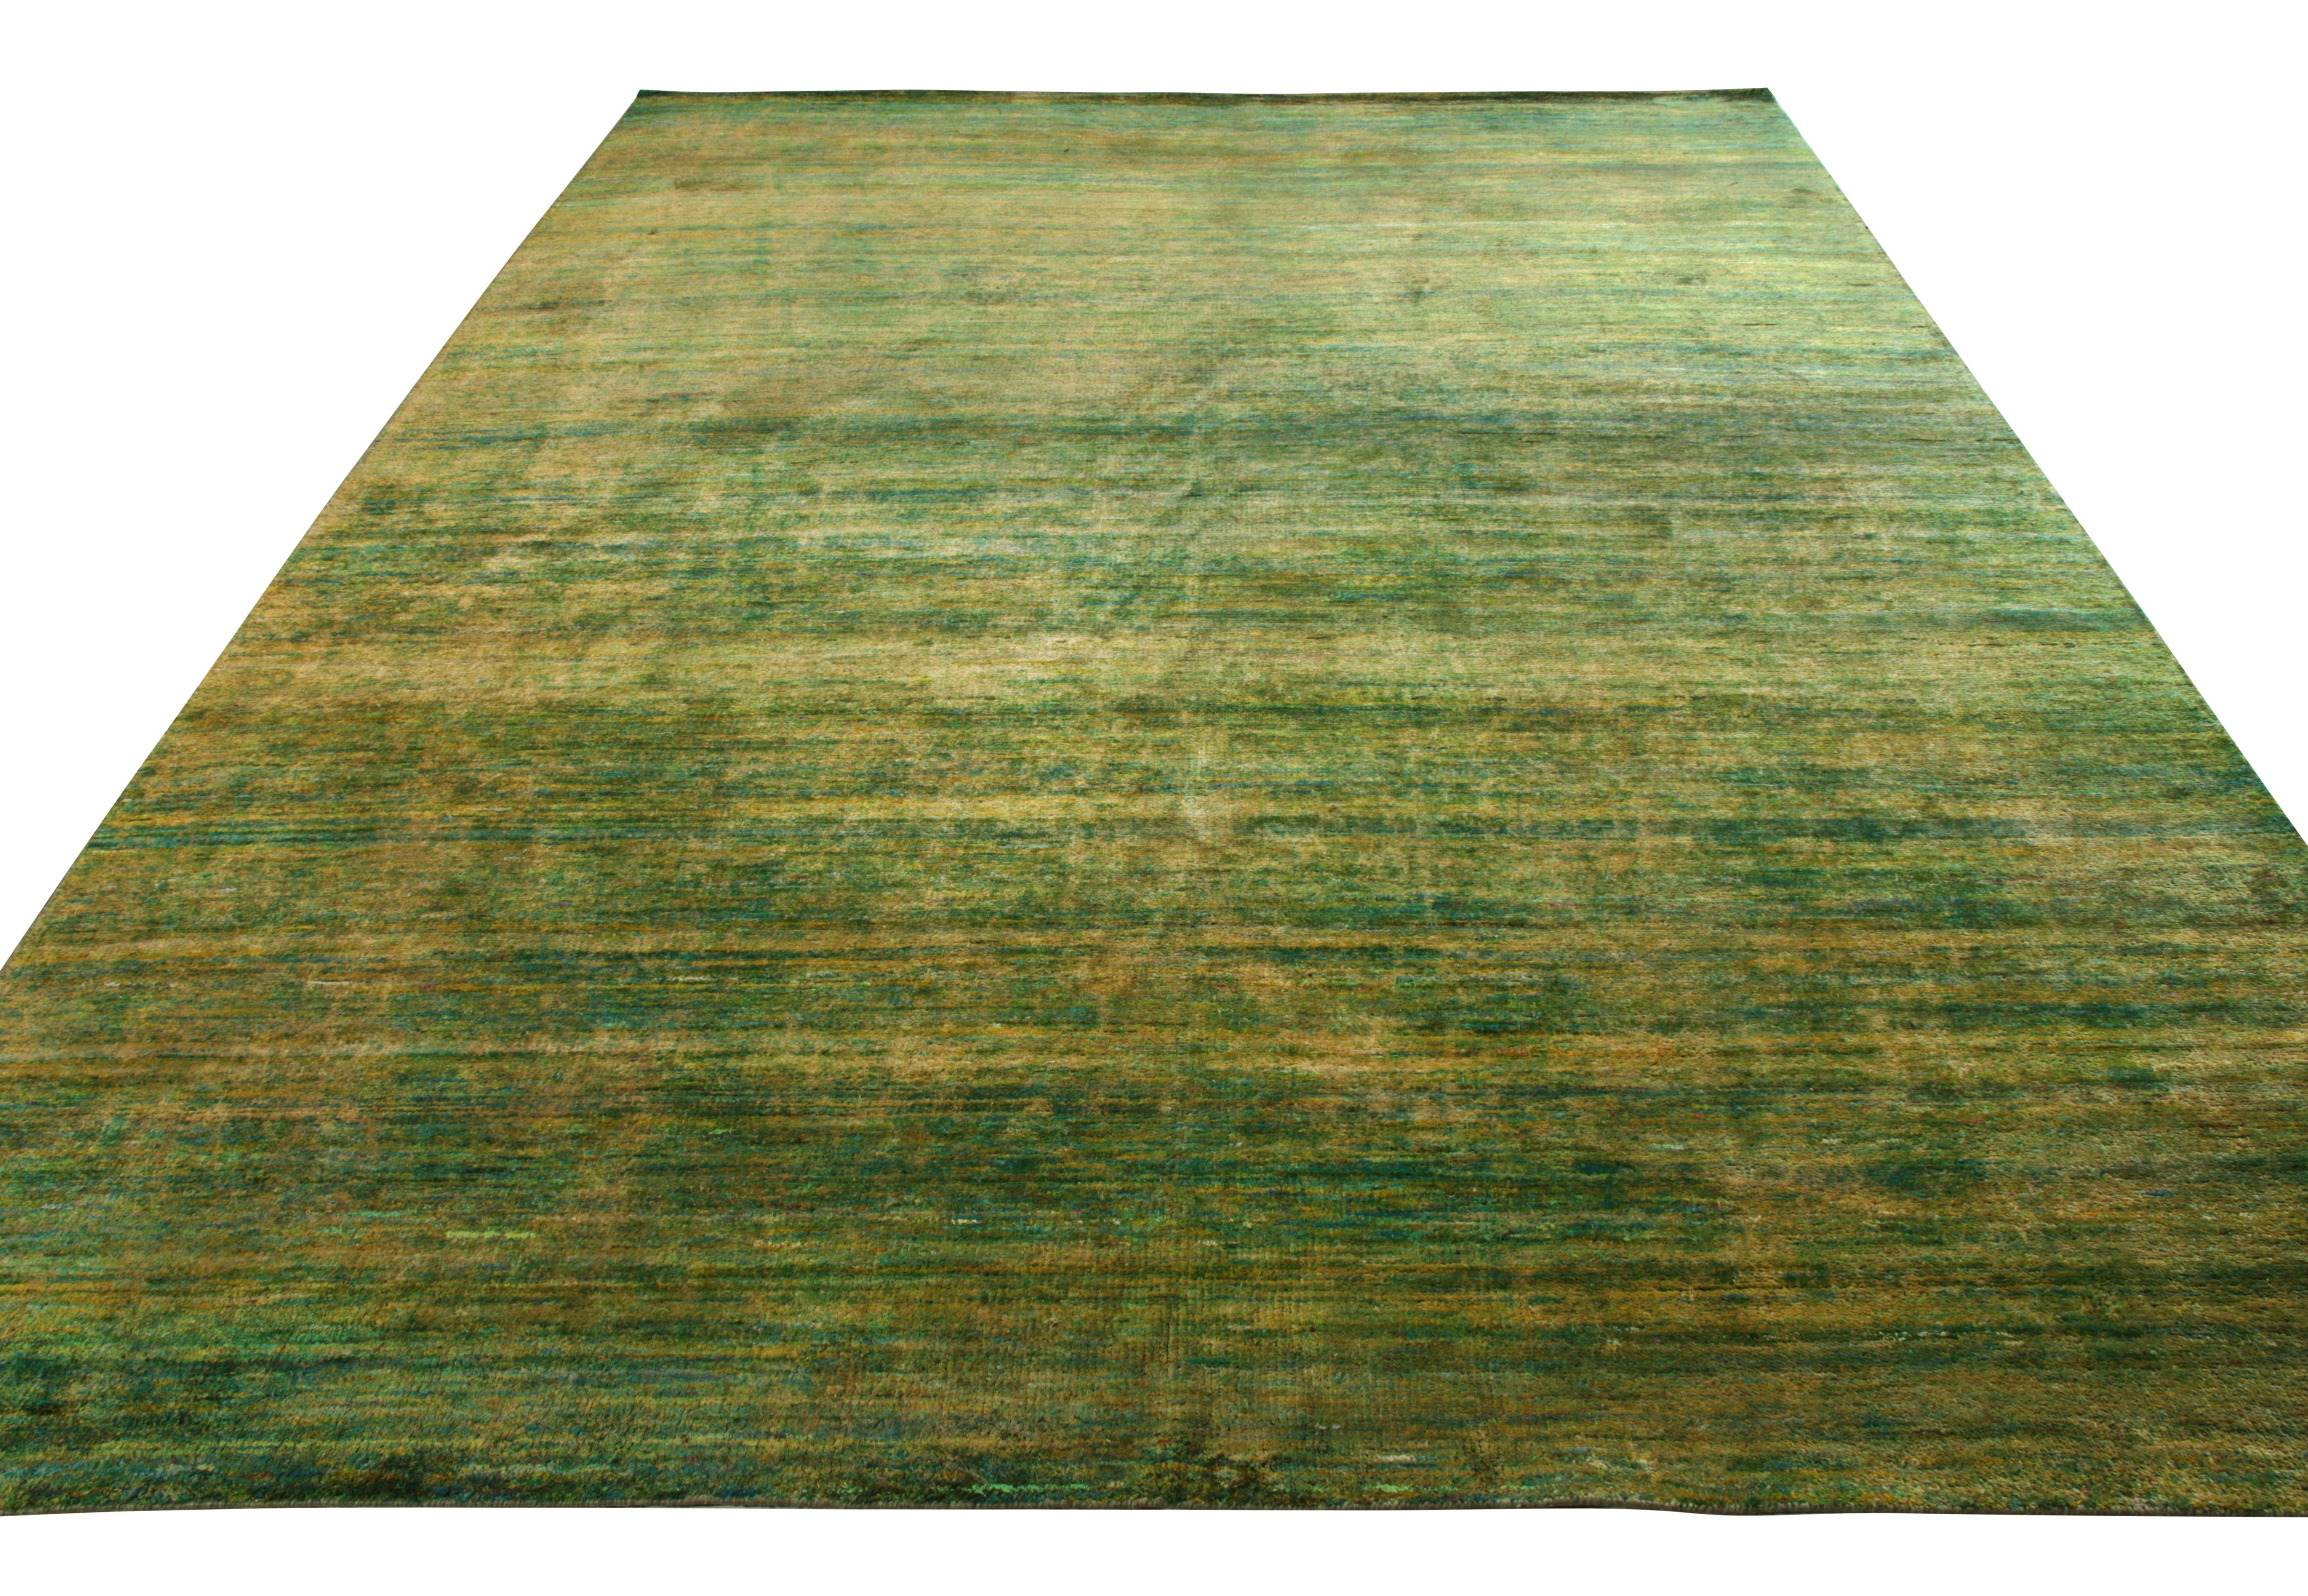 Ein geschmackvoller, handgeknüpfter Seidenteppich, der die Schönheit der Primärfarben aus der exklusiven Texture of Color Kollektion von Rug & Kilim aufgreift. Der Teppich in der Größe 9x12 hat eine spielerische Mischung aus Grün- und Gelbtönen, die